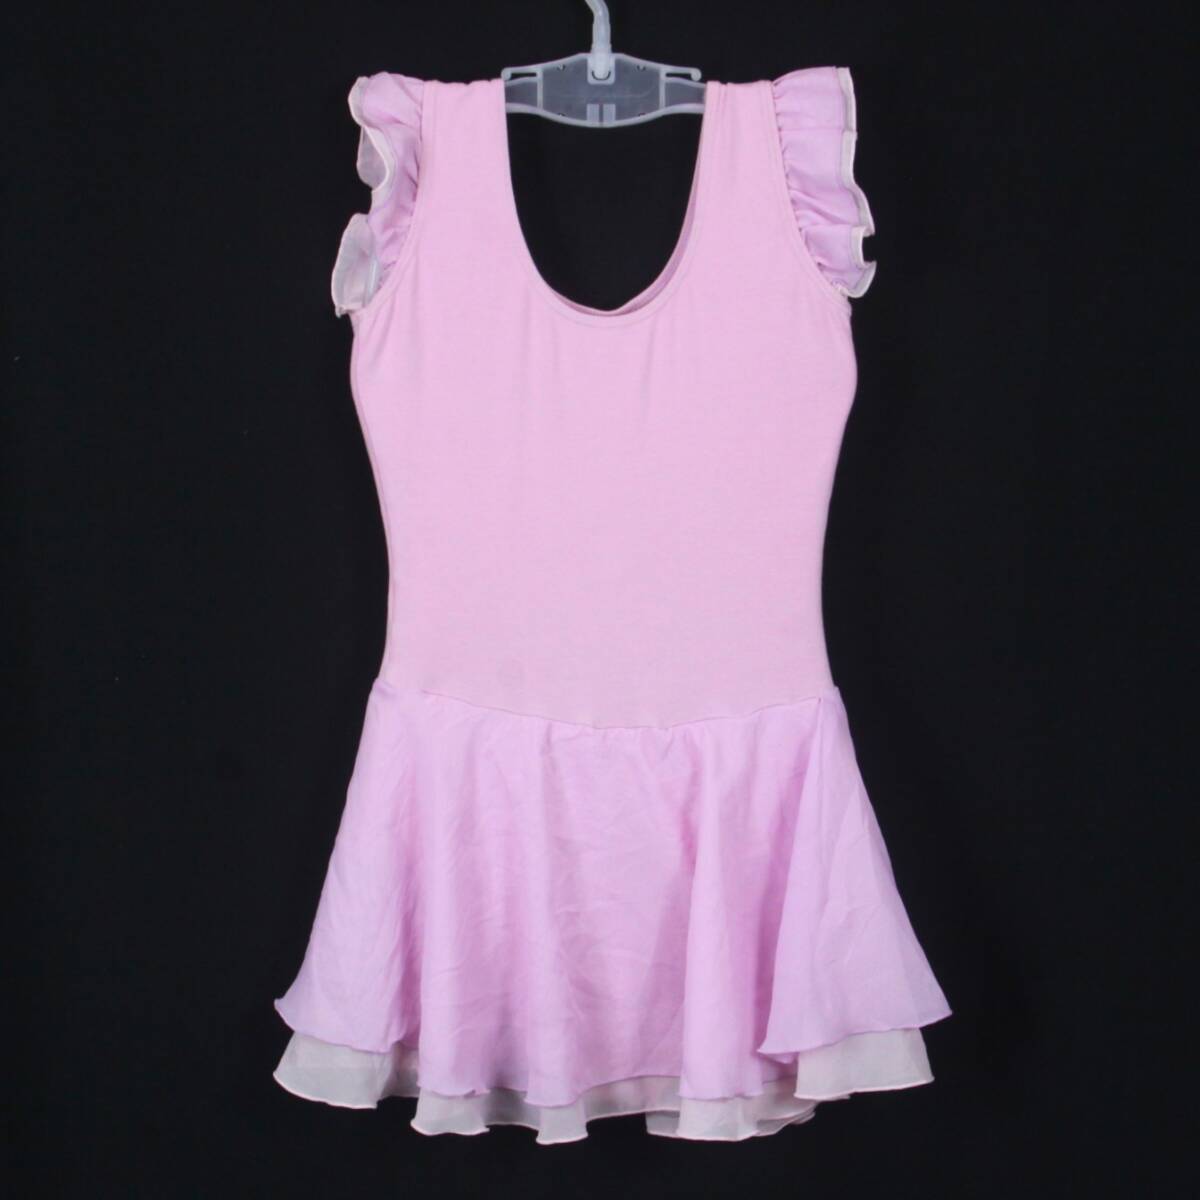 U8356★NARU レオタード バレエ 衣装 スカート フリル かわいい 145サイズ 女子 薄紫 器械体操 新体操 ダンス 競技 エアロビの画像2